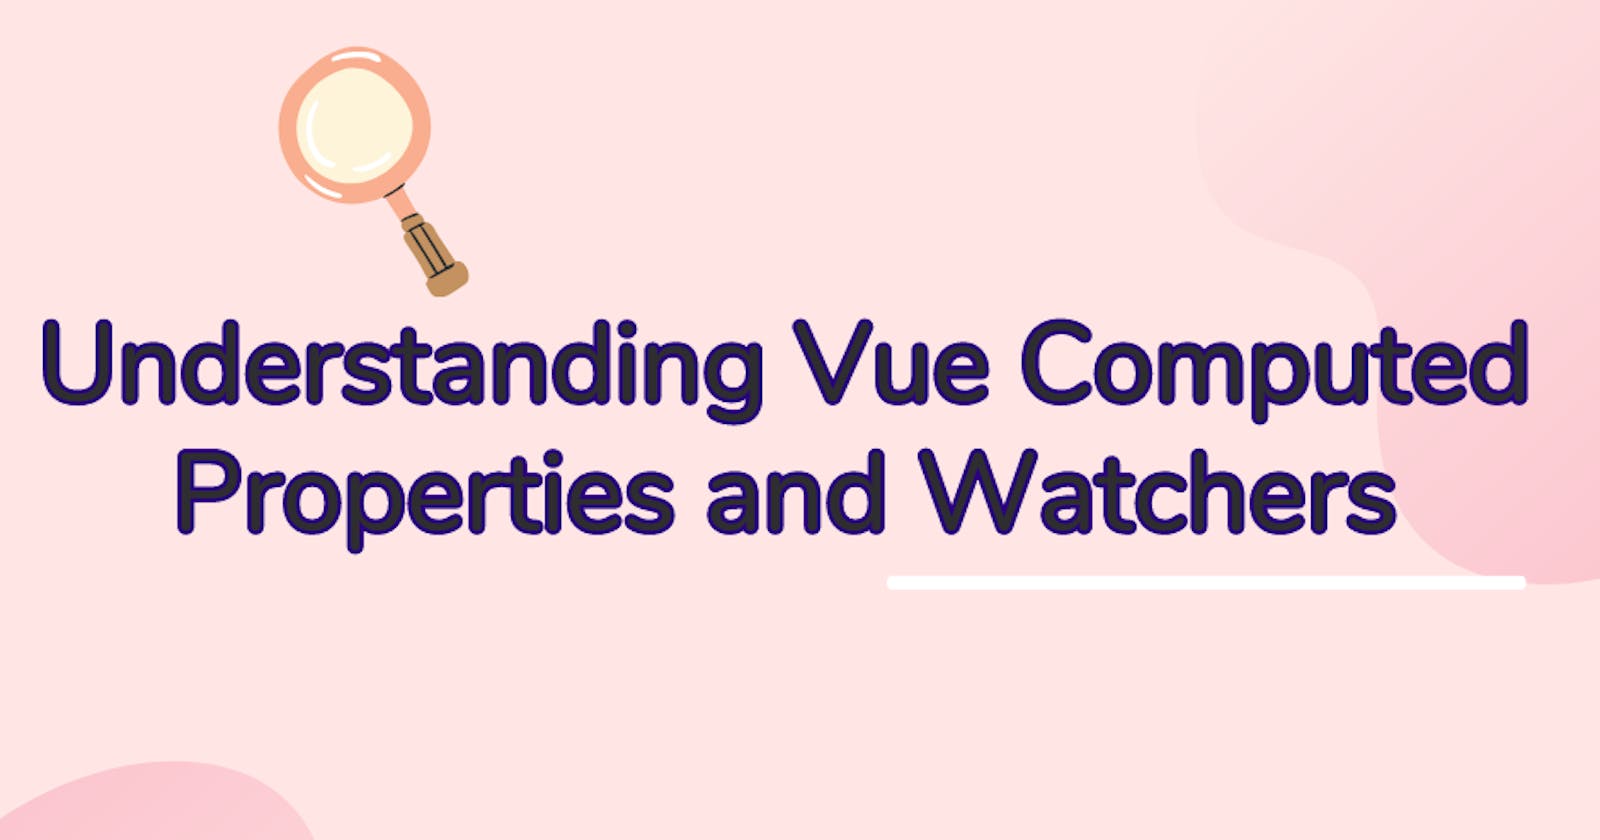 Understanding Vue Computed Properties and Watchers